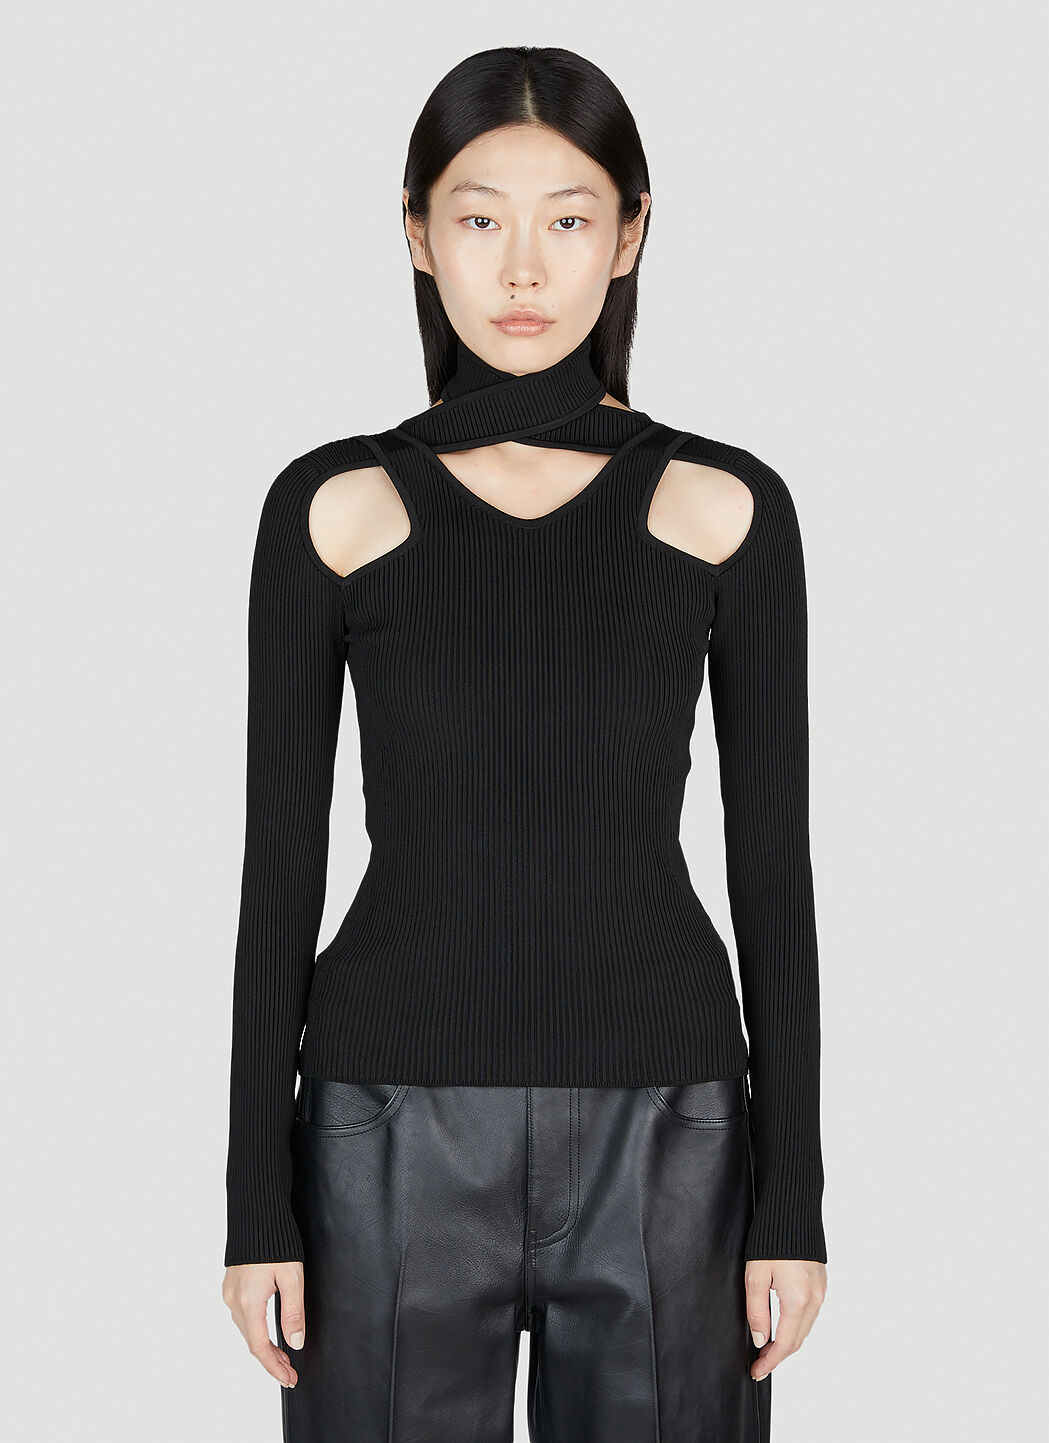 Coperni Cut-Out Knit Sweater Black cpn0251012